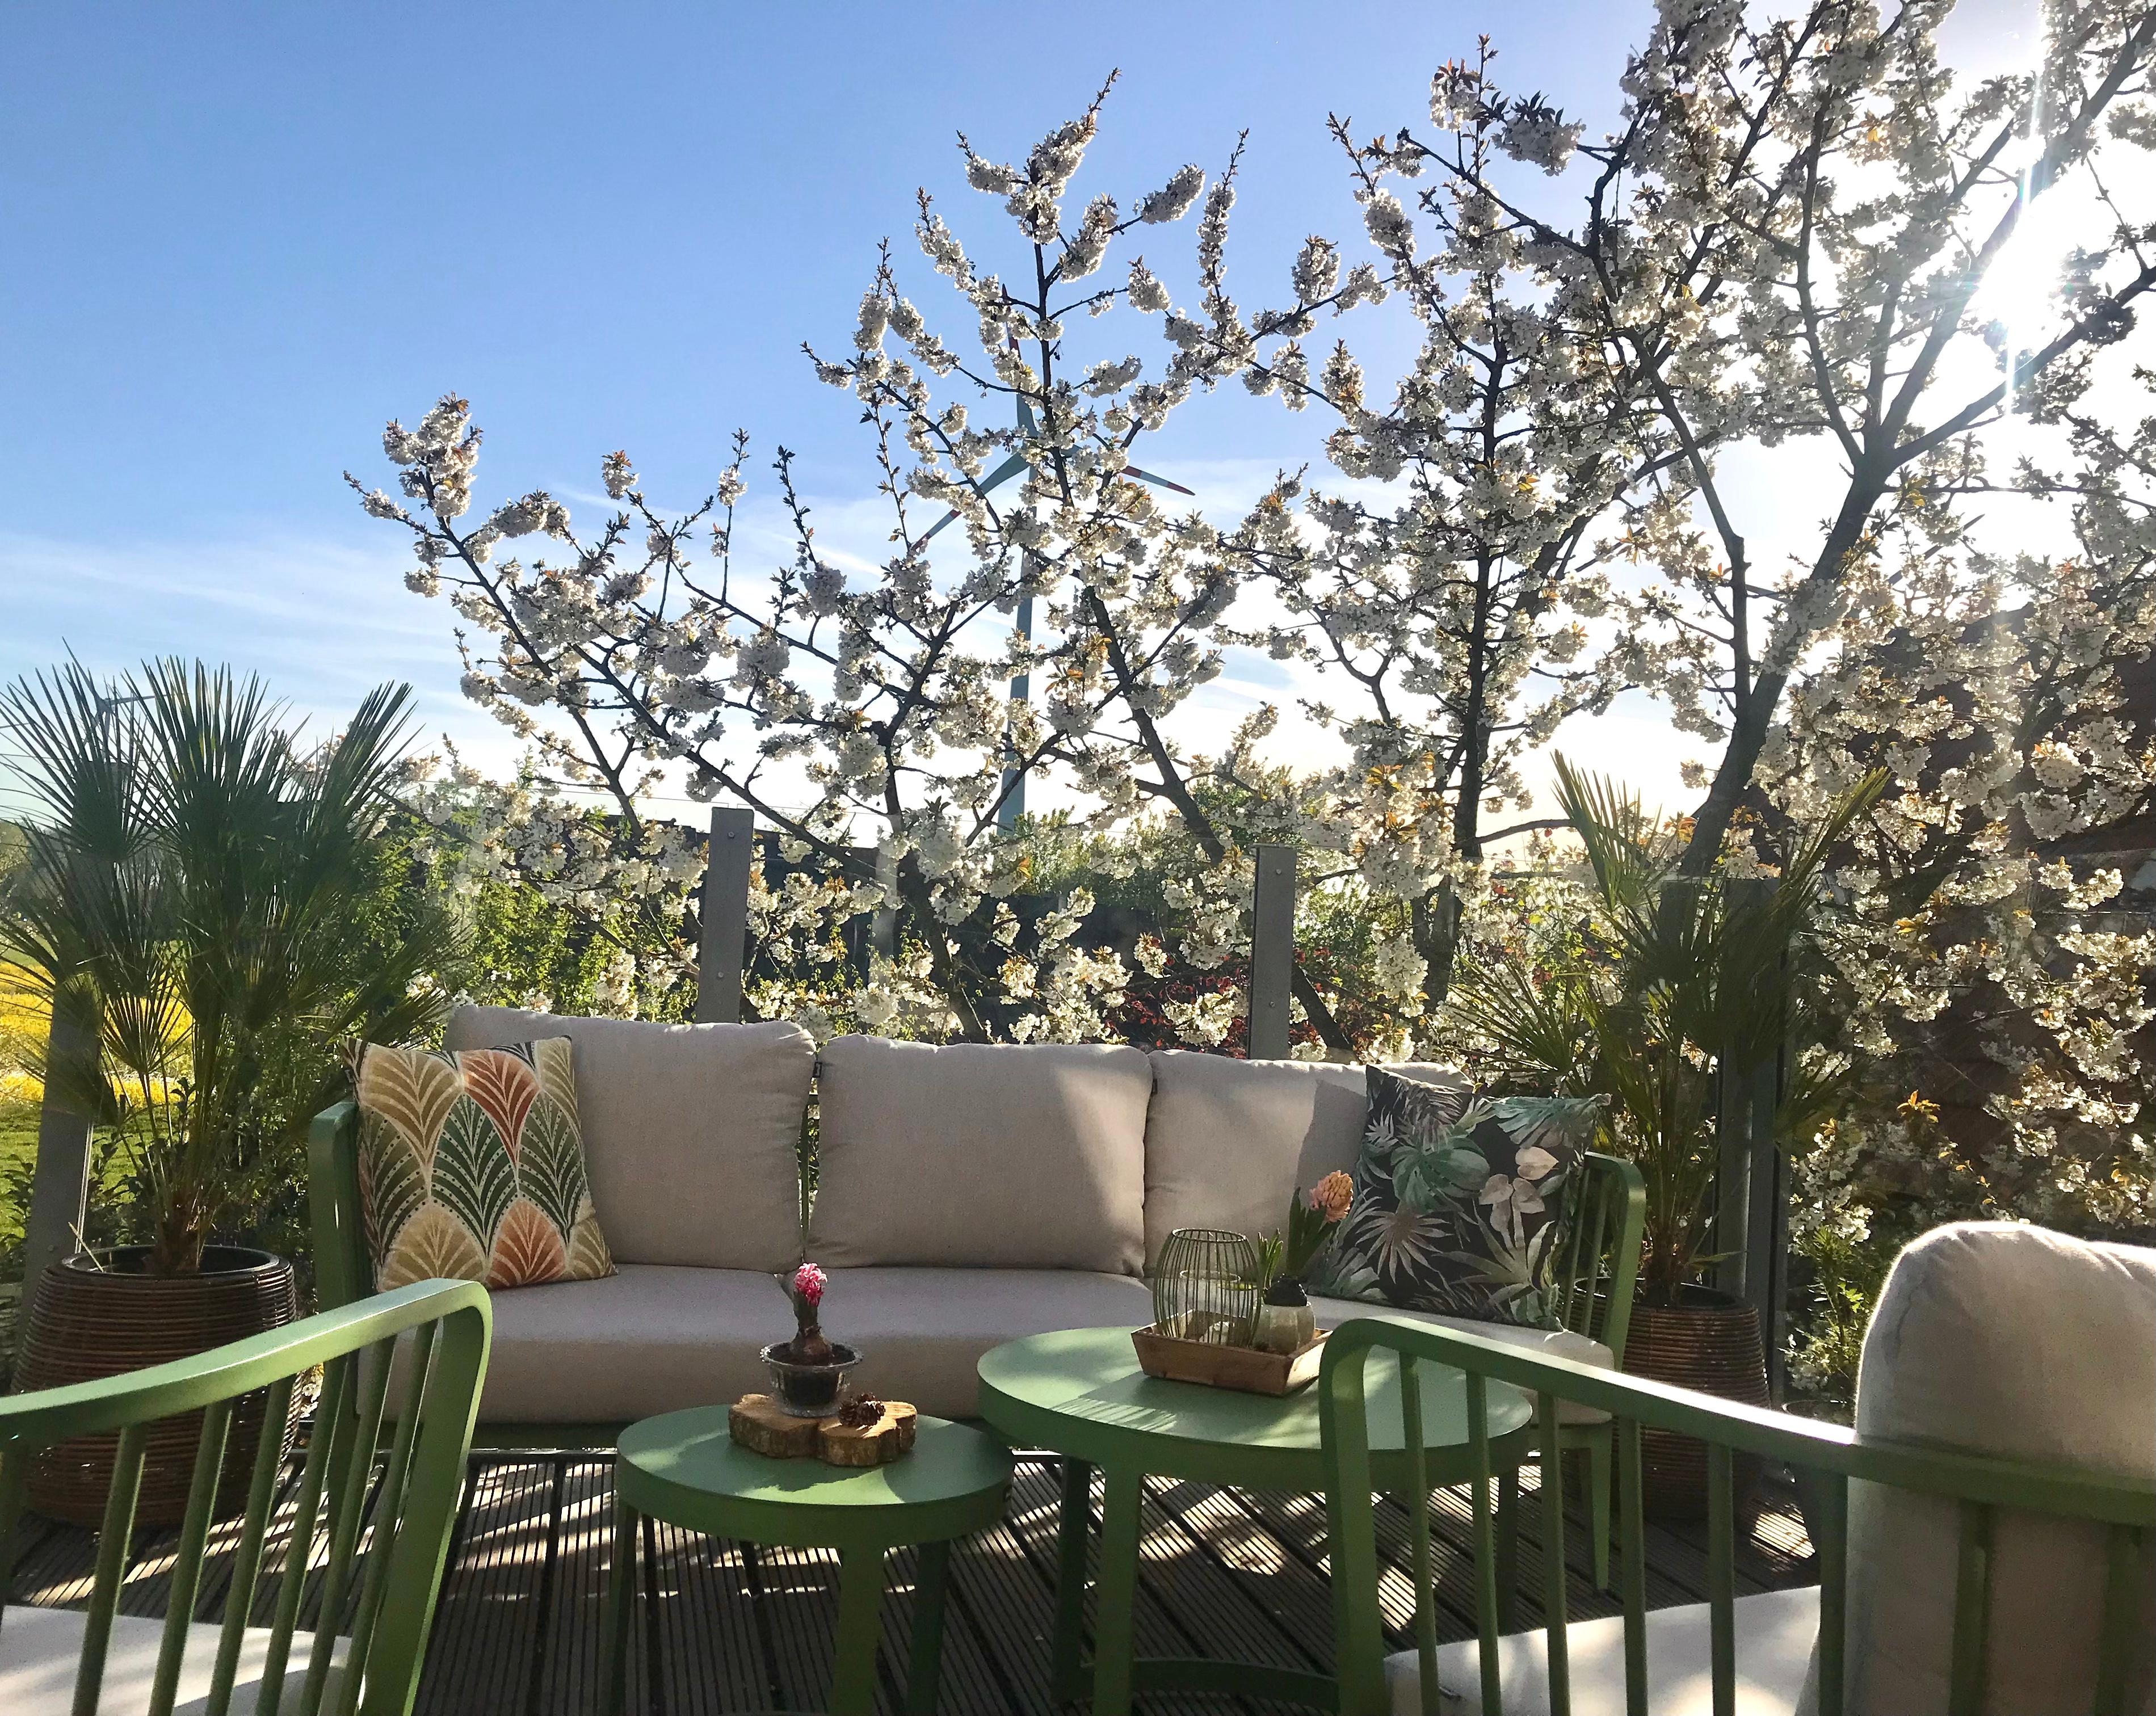 Frühlingsduft liegt in der Luft 🌸 ☀️  #kirschblüte #outdoorwohnzimmer #balkonliebe #amliebstendraußen 💚